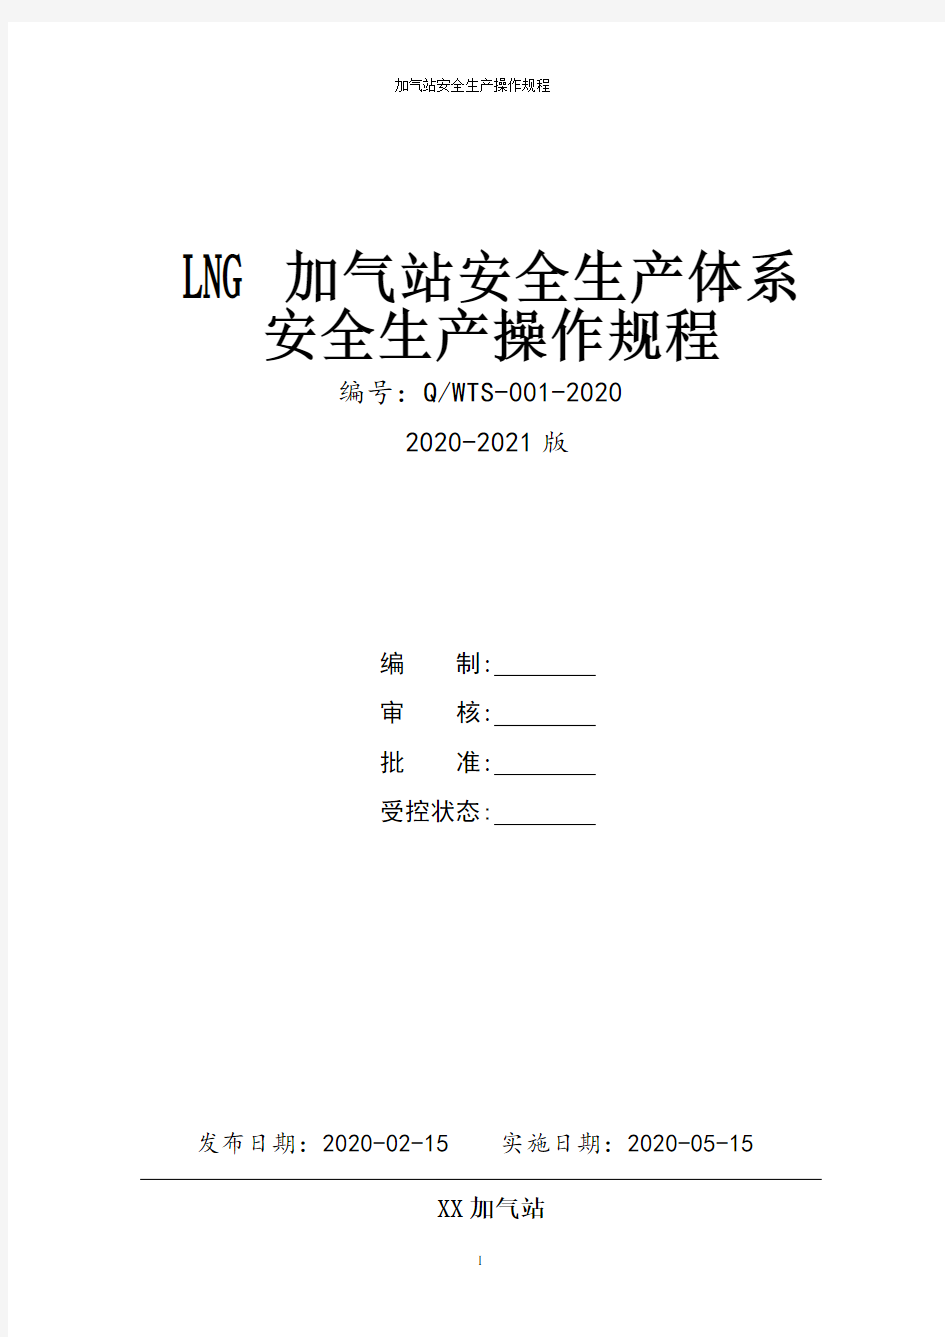 加气站(LNG加气站)全套安全生产操作规程